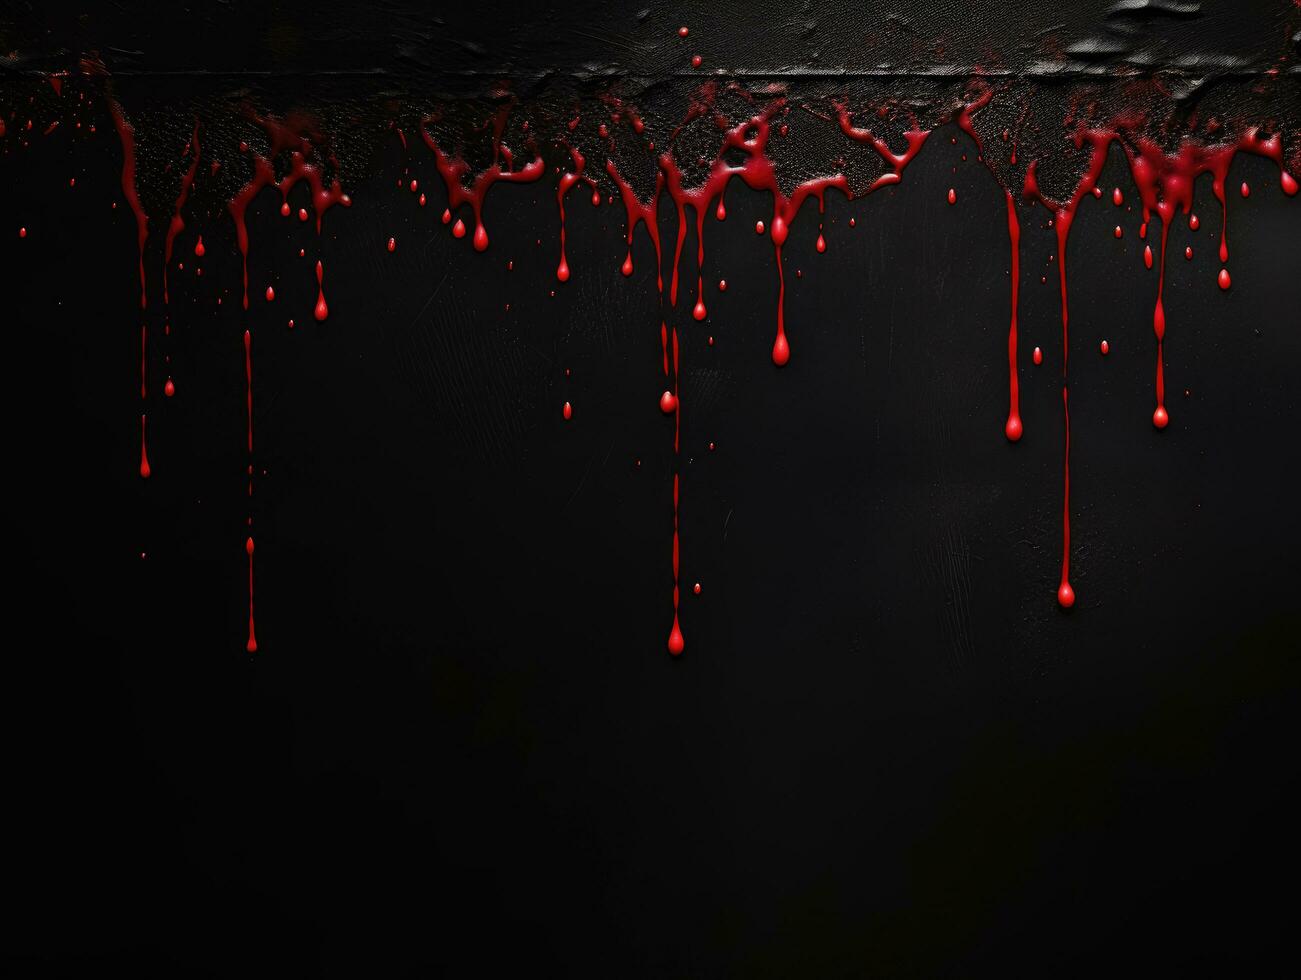 Dark background with dripping blood photo